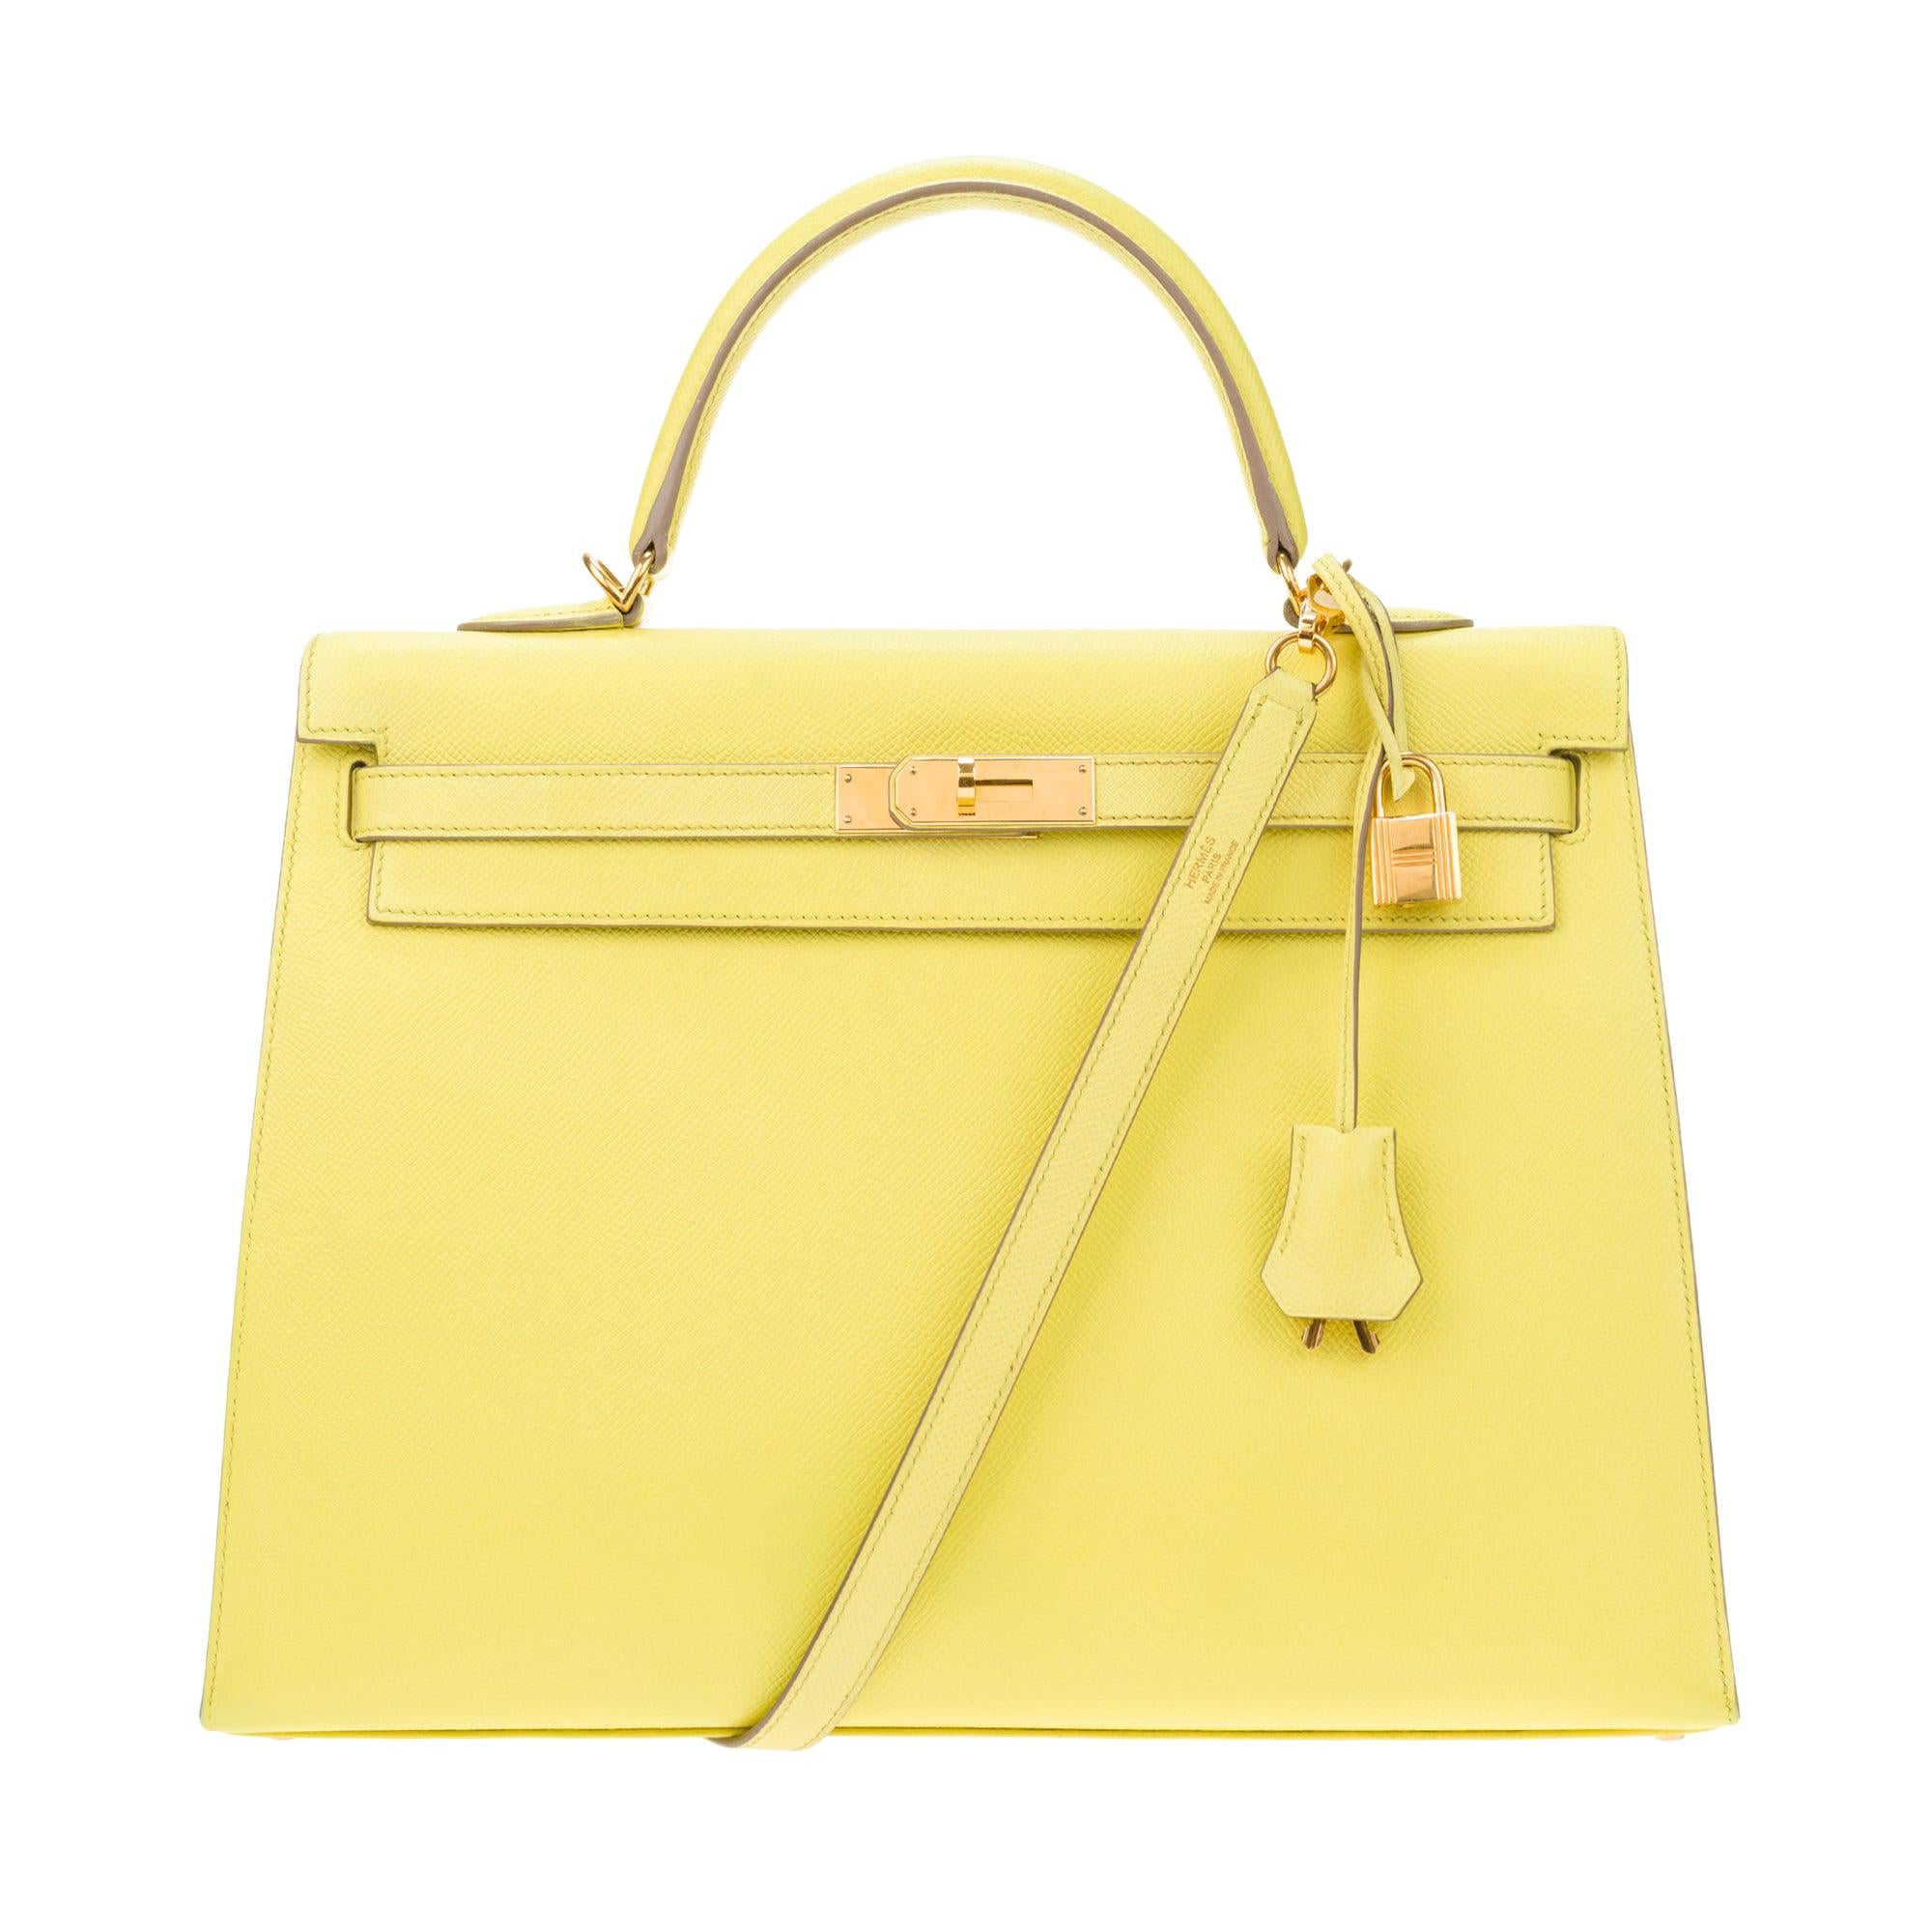 Erstaunlich Hermès Kelly 35 Handtasche mit Gurt in epsom gelb Zitrone Farbe, GHW !